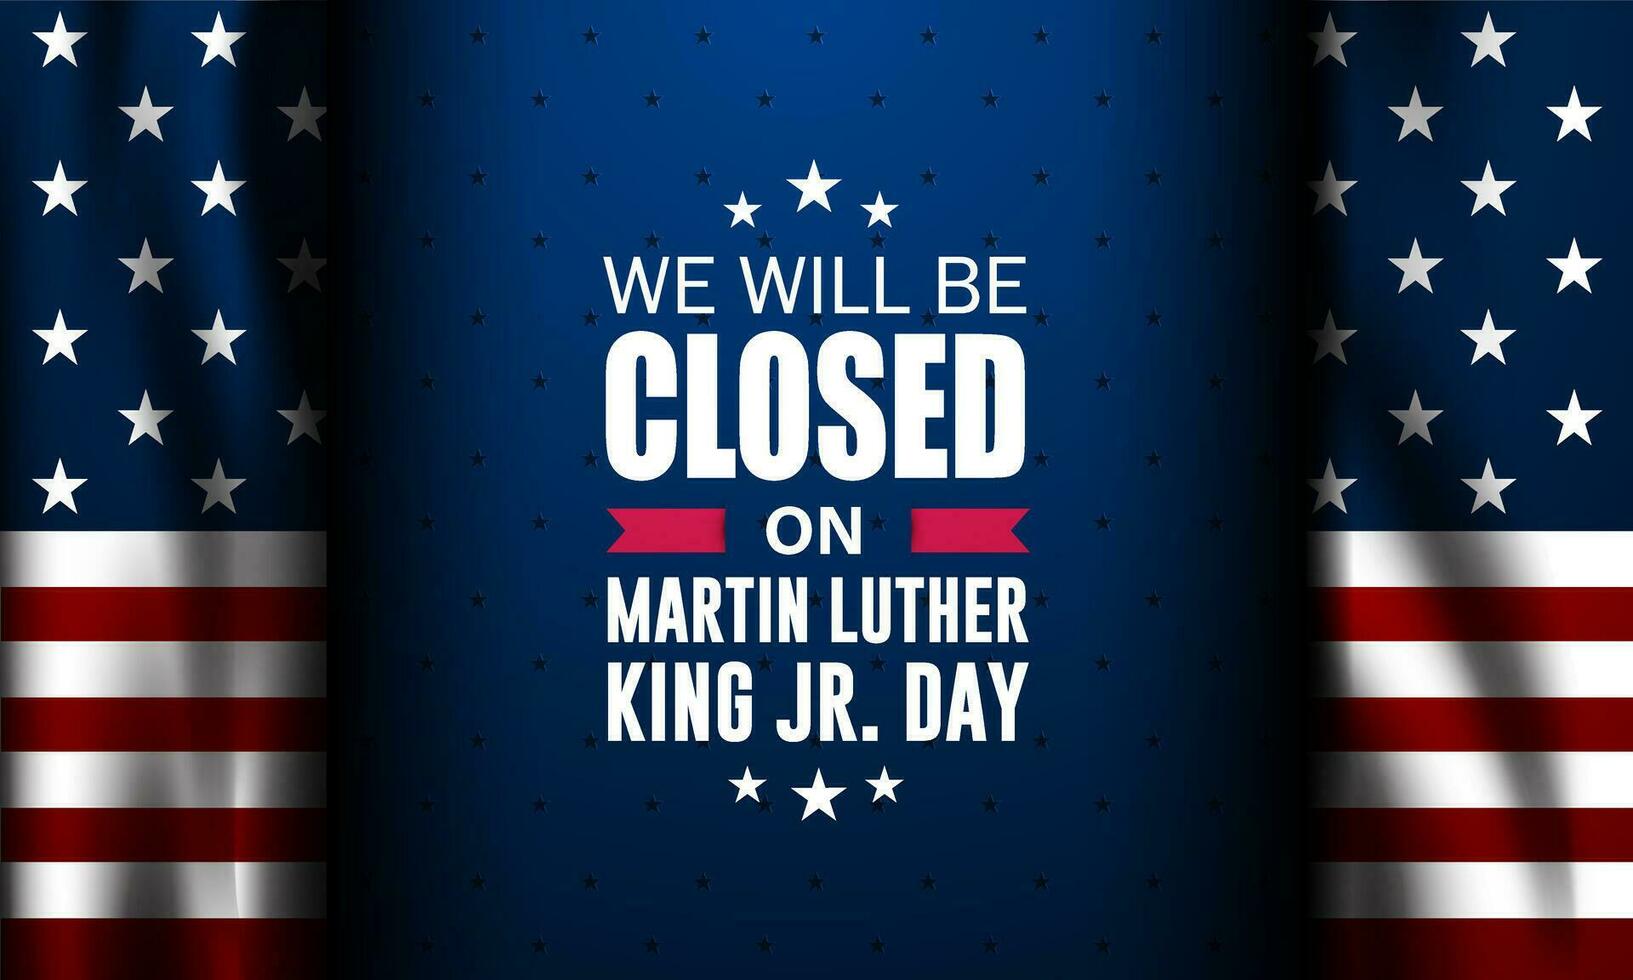 gelukkig Martin Luther koning jr. dag met wij zullen worden Gesloten tekst achtergrond vector illustratie